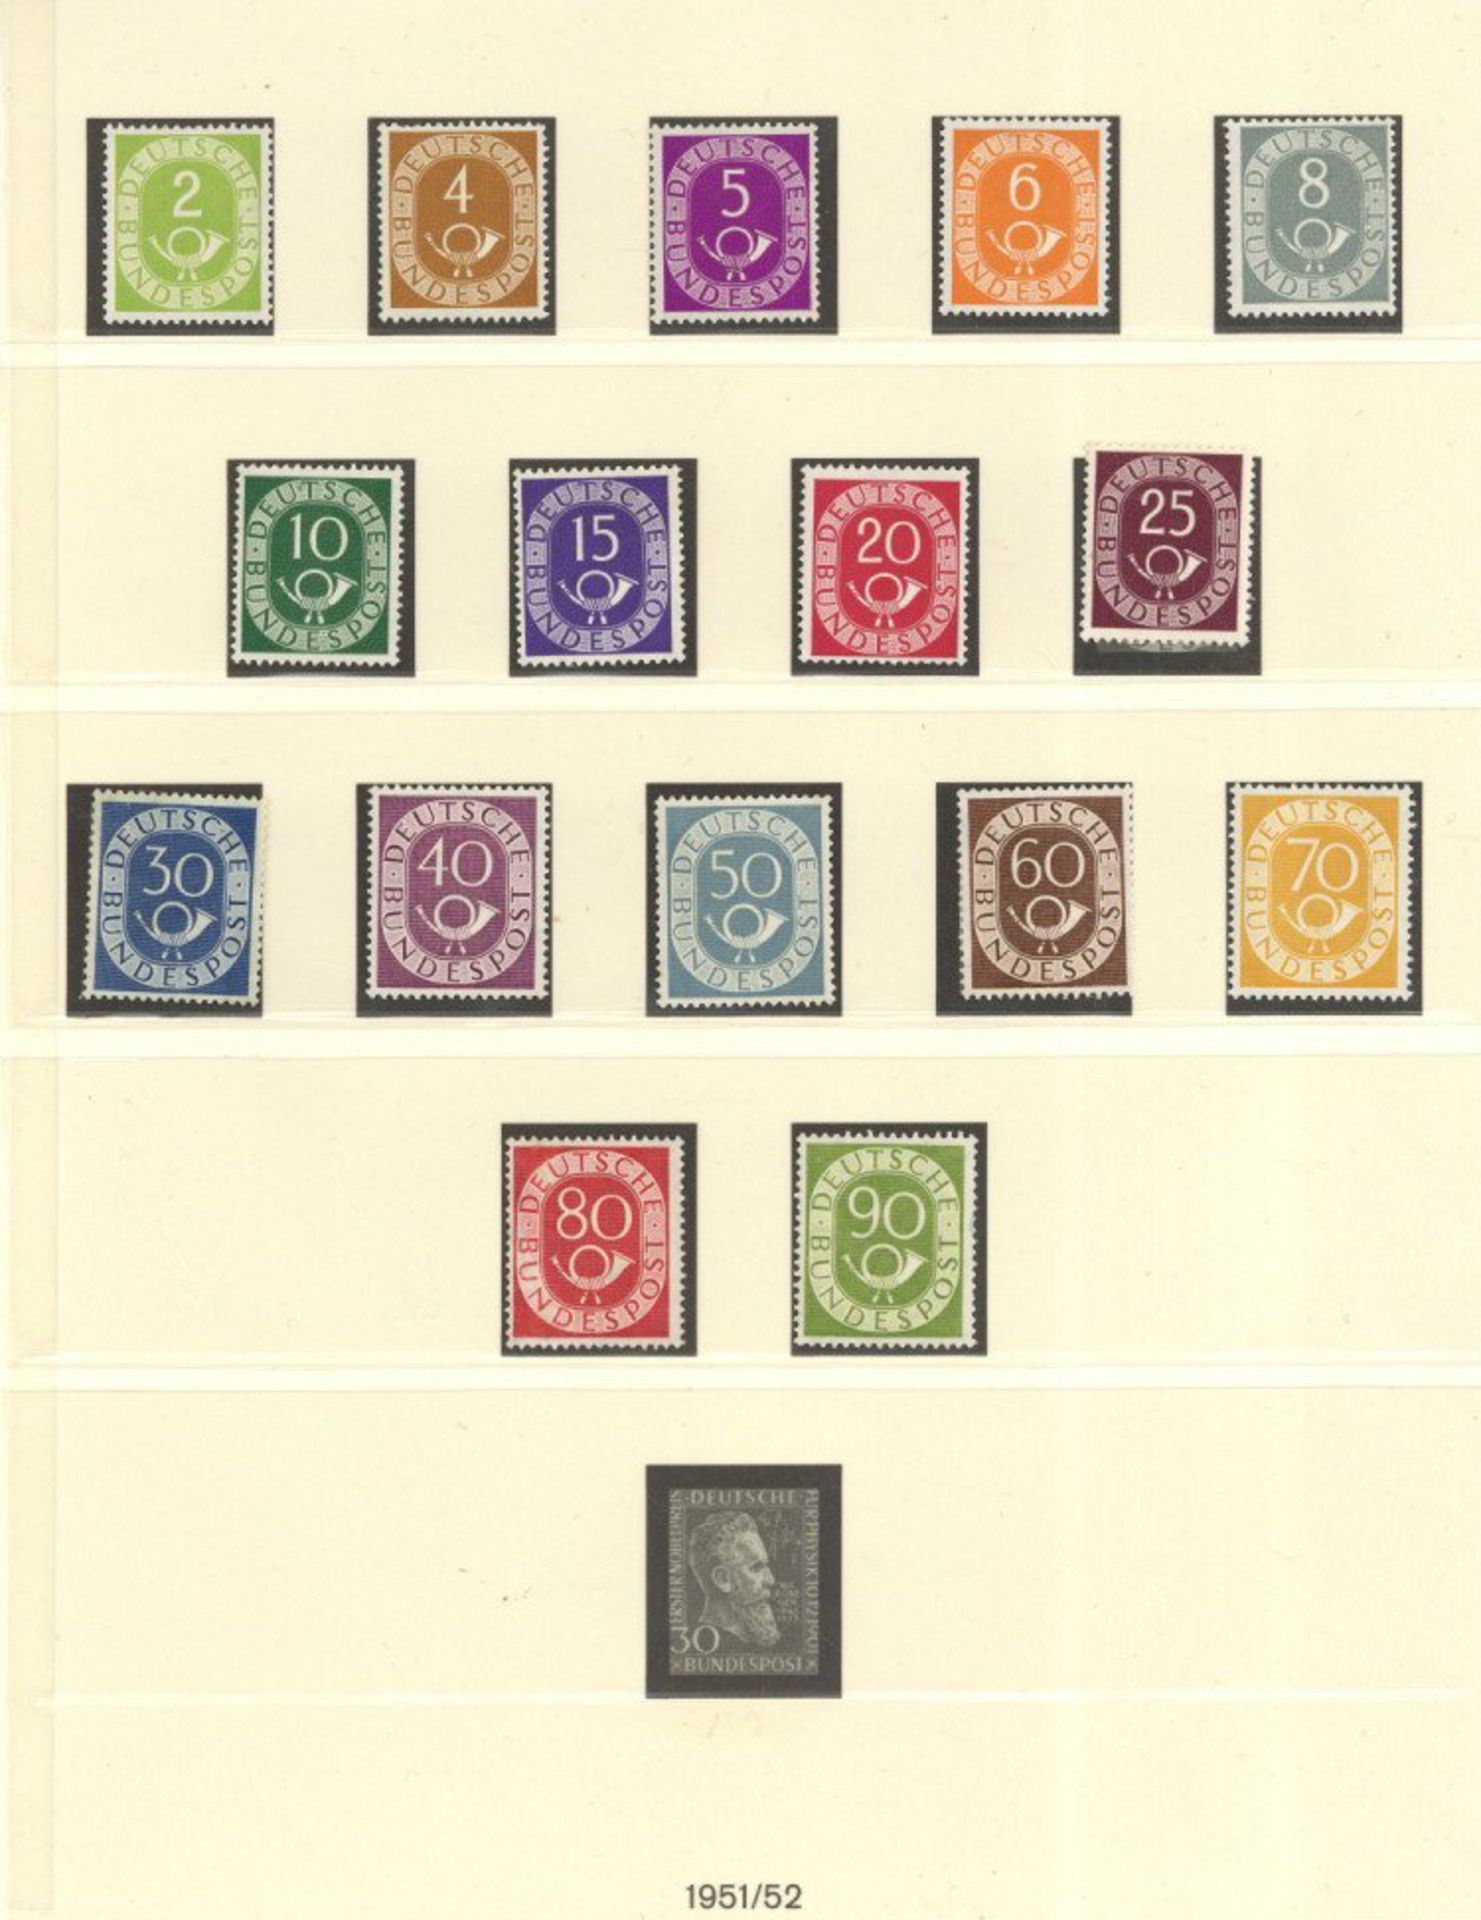 BUND, Mi.Nr.123-38, 1951, 2-90 Pf Posthorn ungebraucht, teils postfrisch, besichtigen